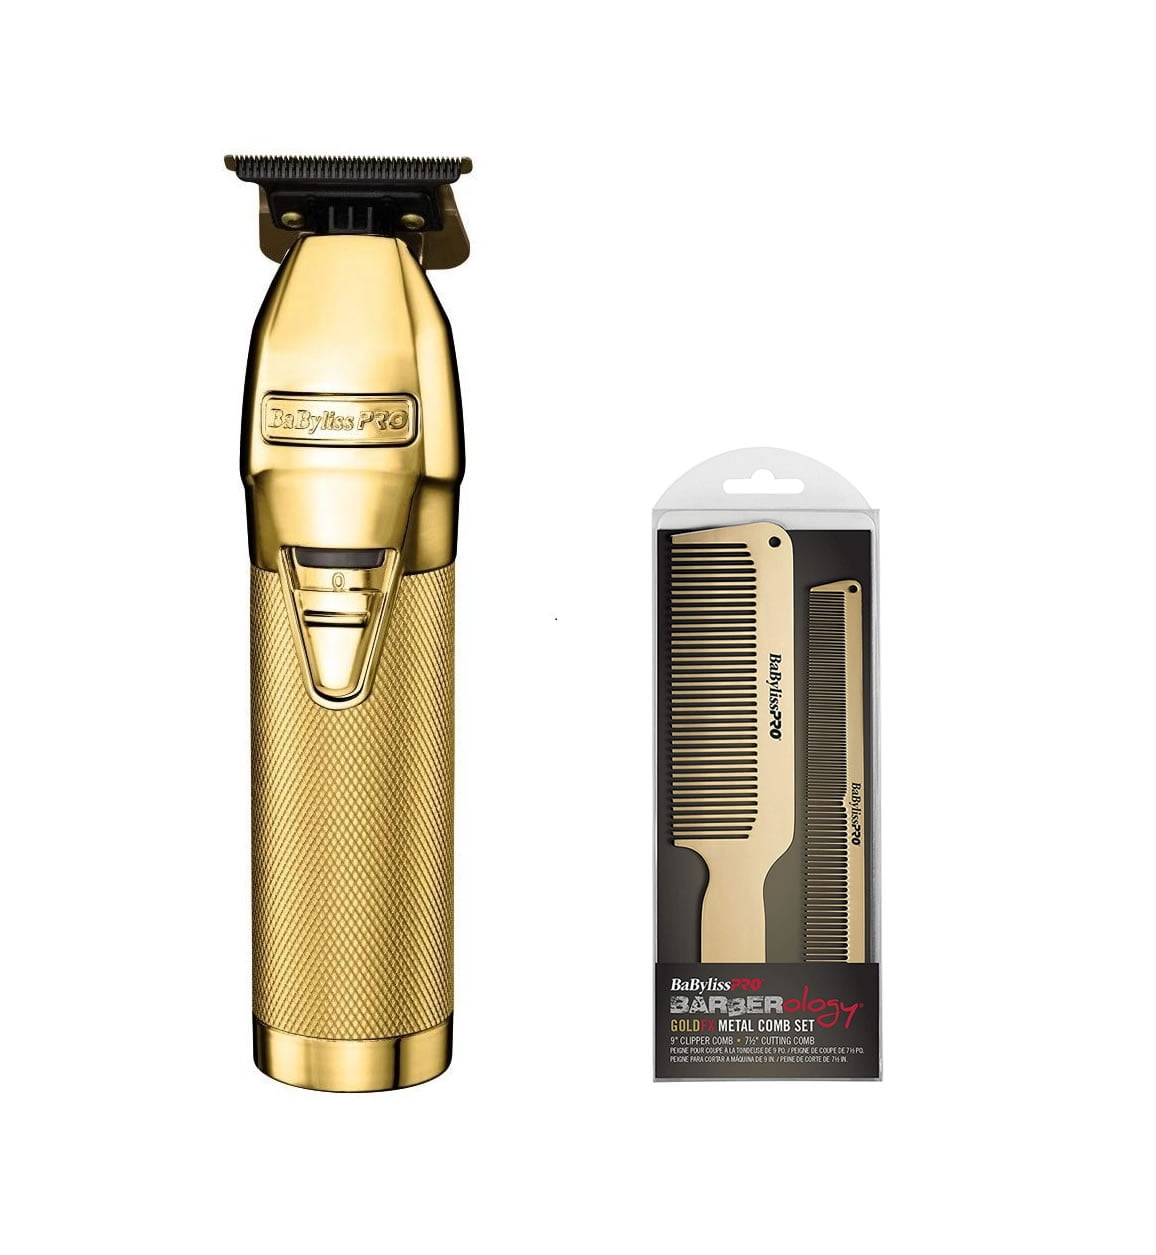 BaBylissPRO Barberology Hair Trimmer for Men FX787RG ROSEFX Professional  Outlining Trimmer & Electric Razor, Gold